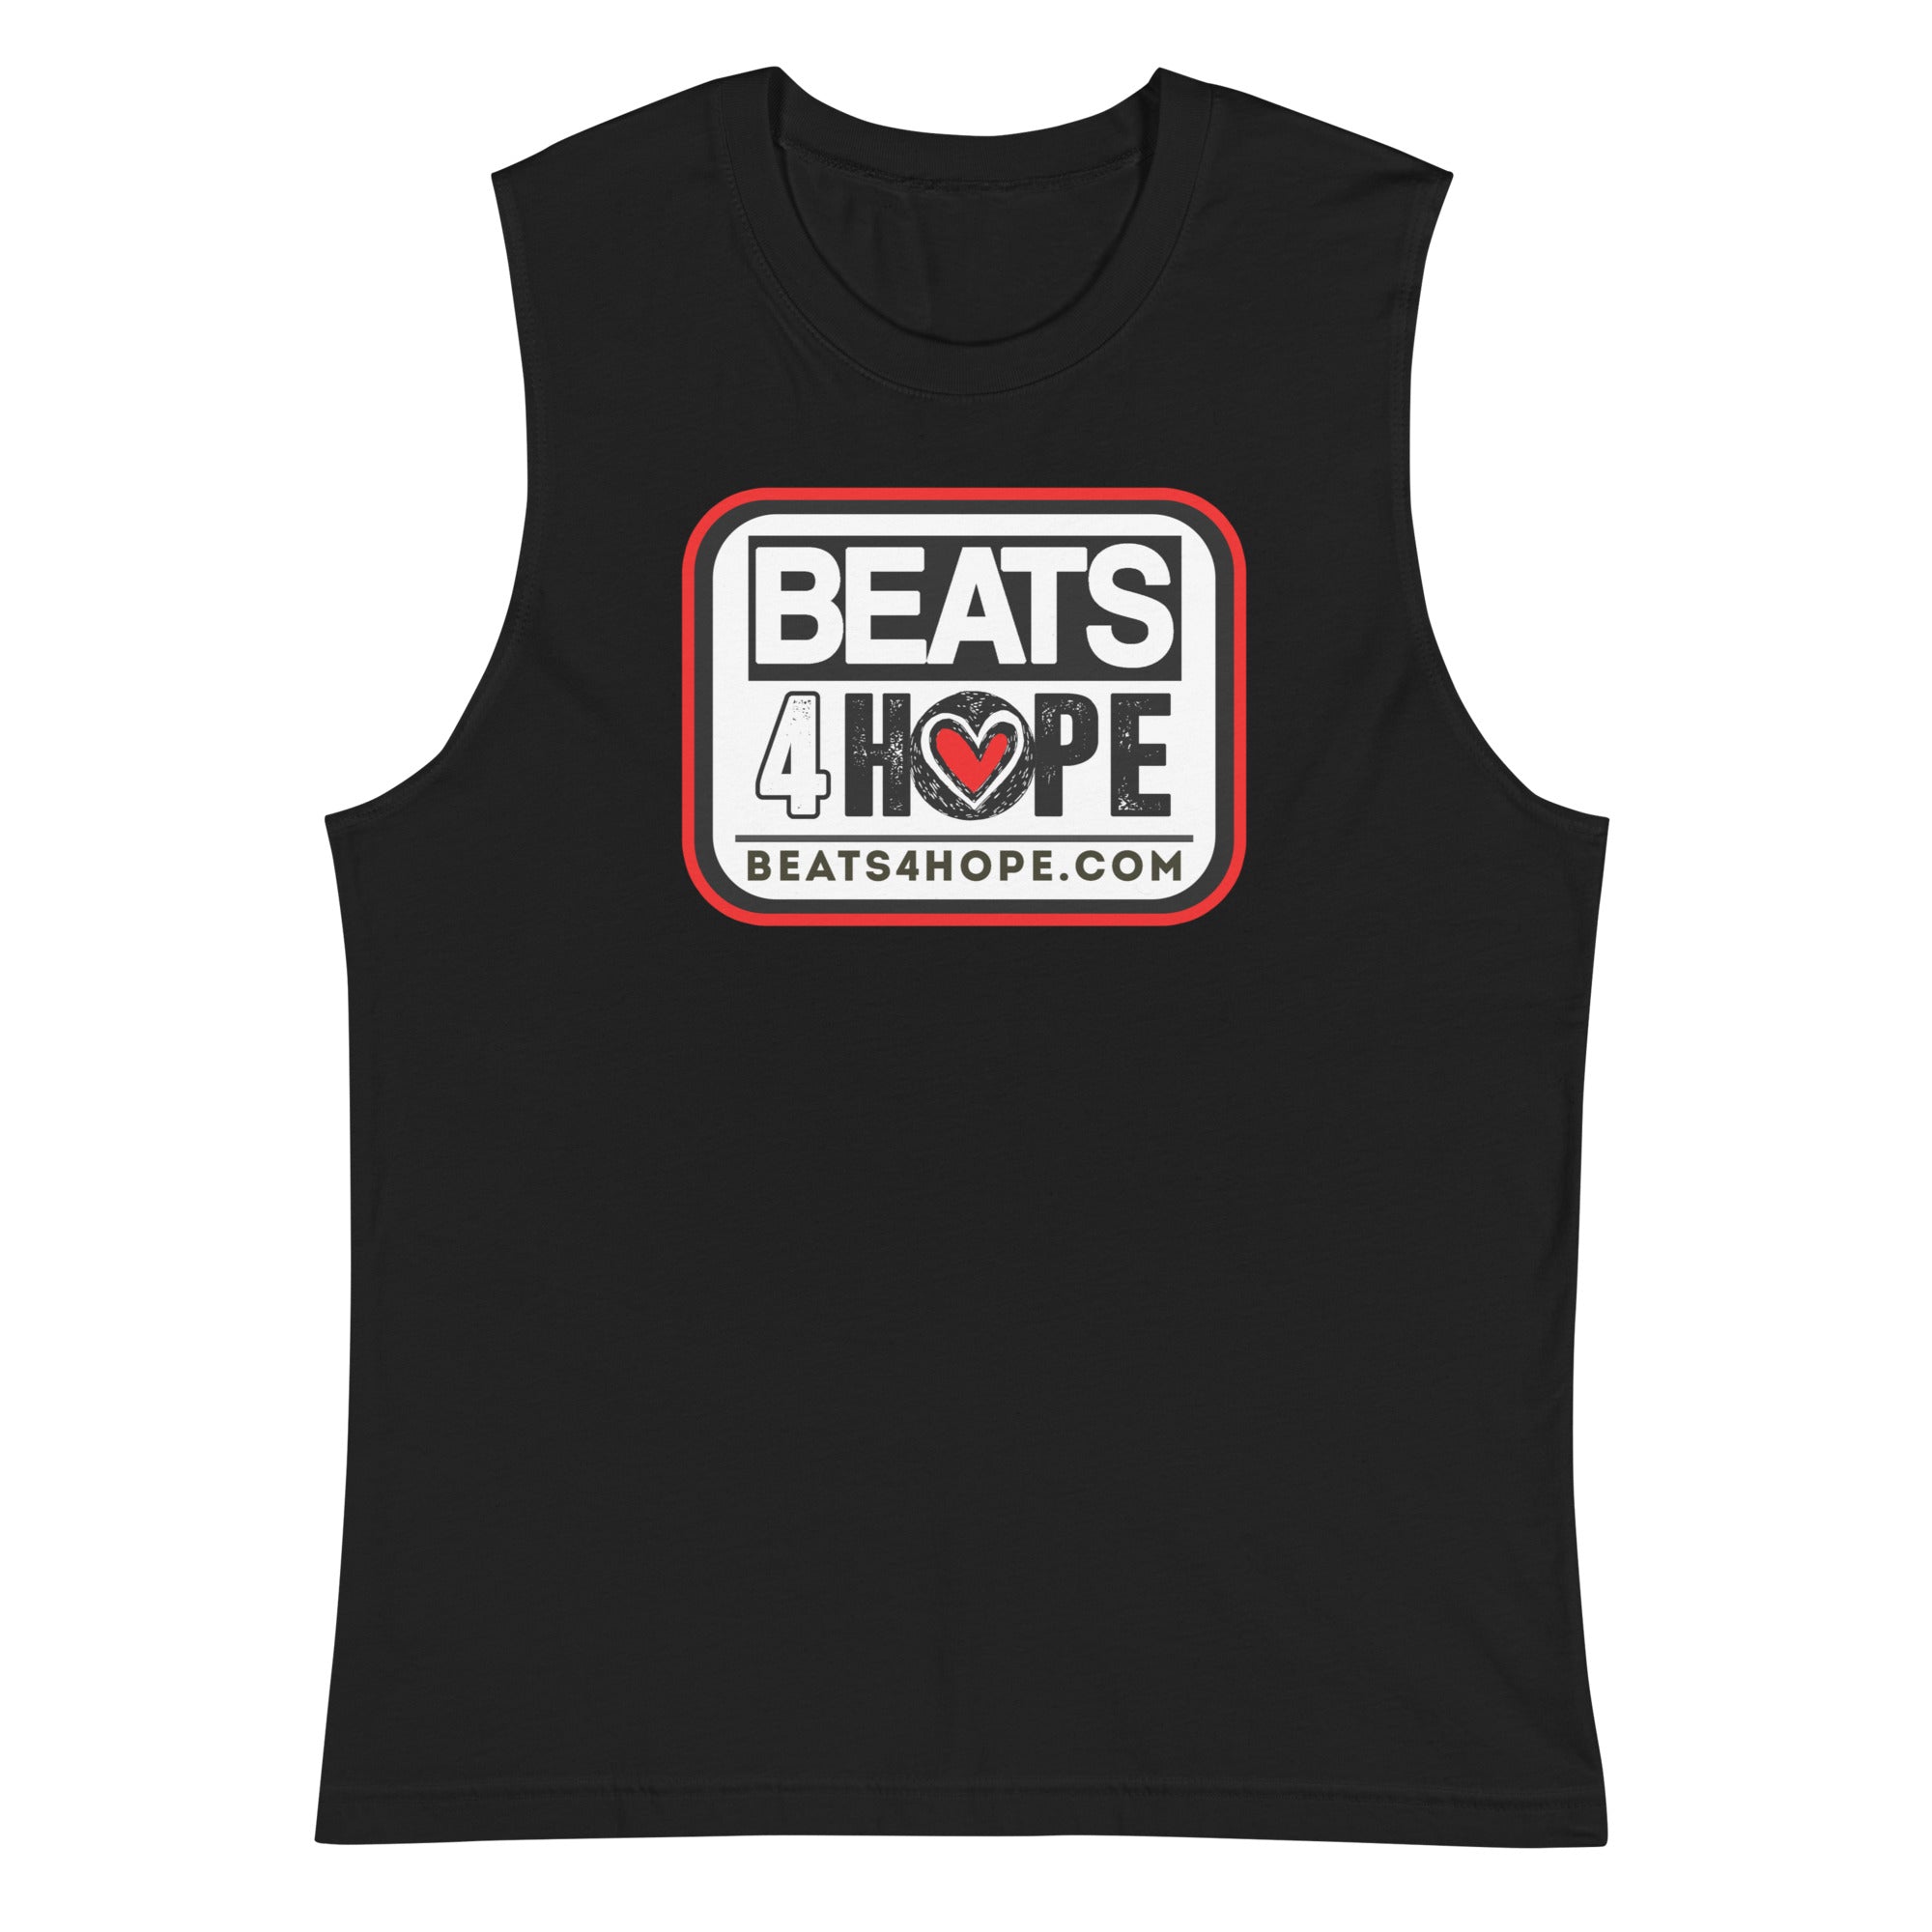 BEATS4HOPE - Muscle Shirt - Beats 4 Hope